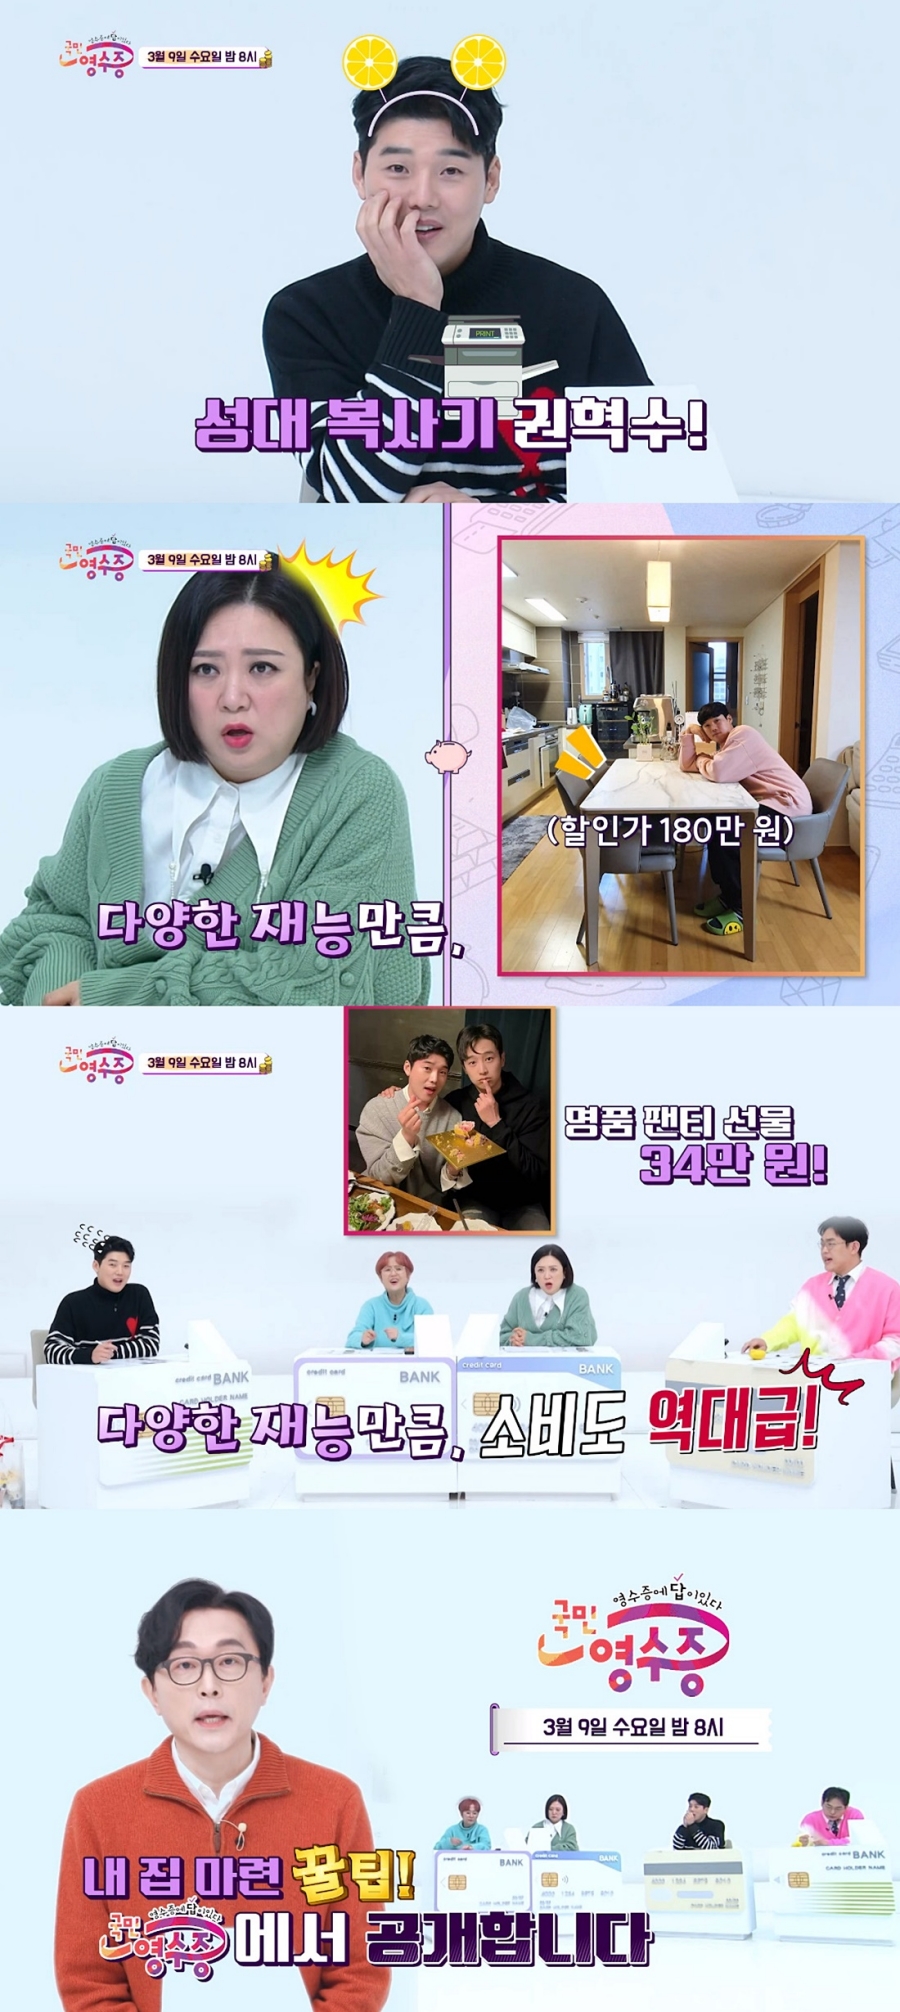 '국민 영수증' 예고 / 사진: KBS Joy 제공